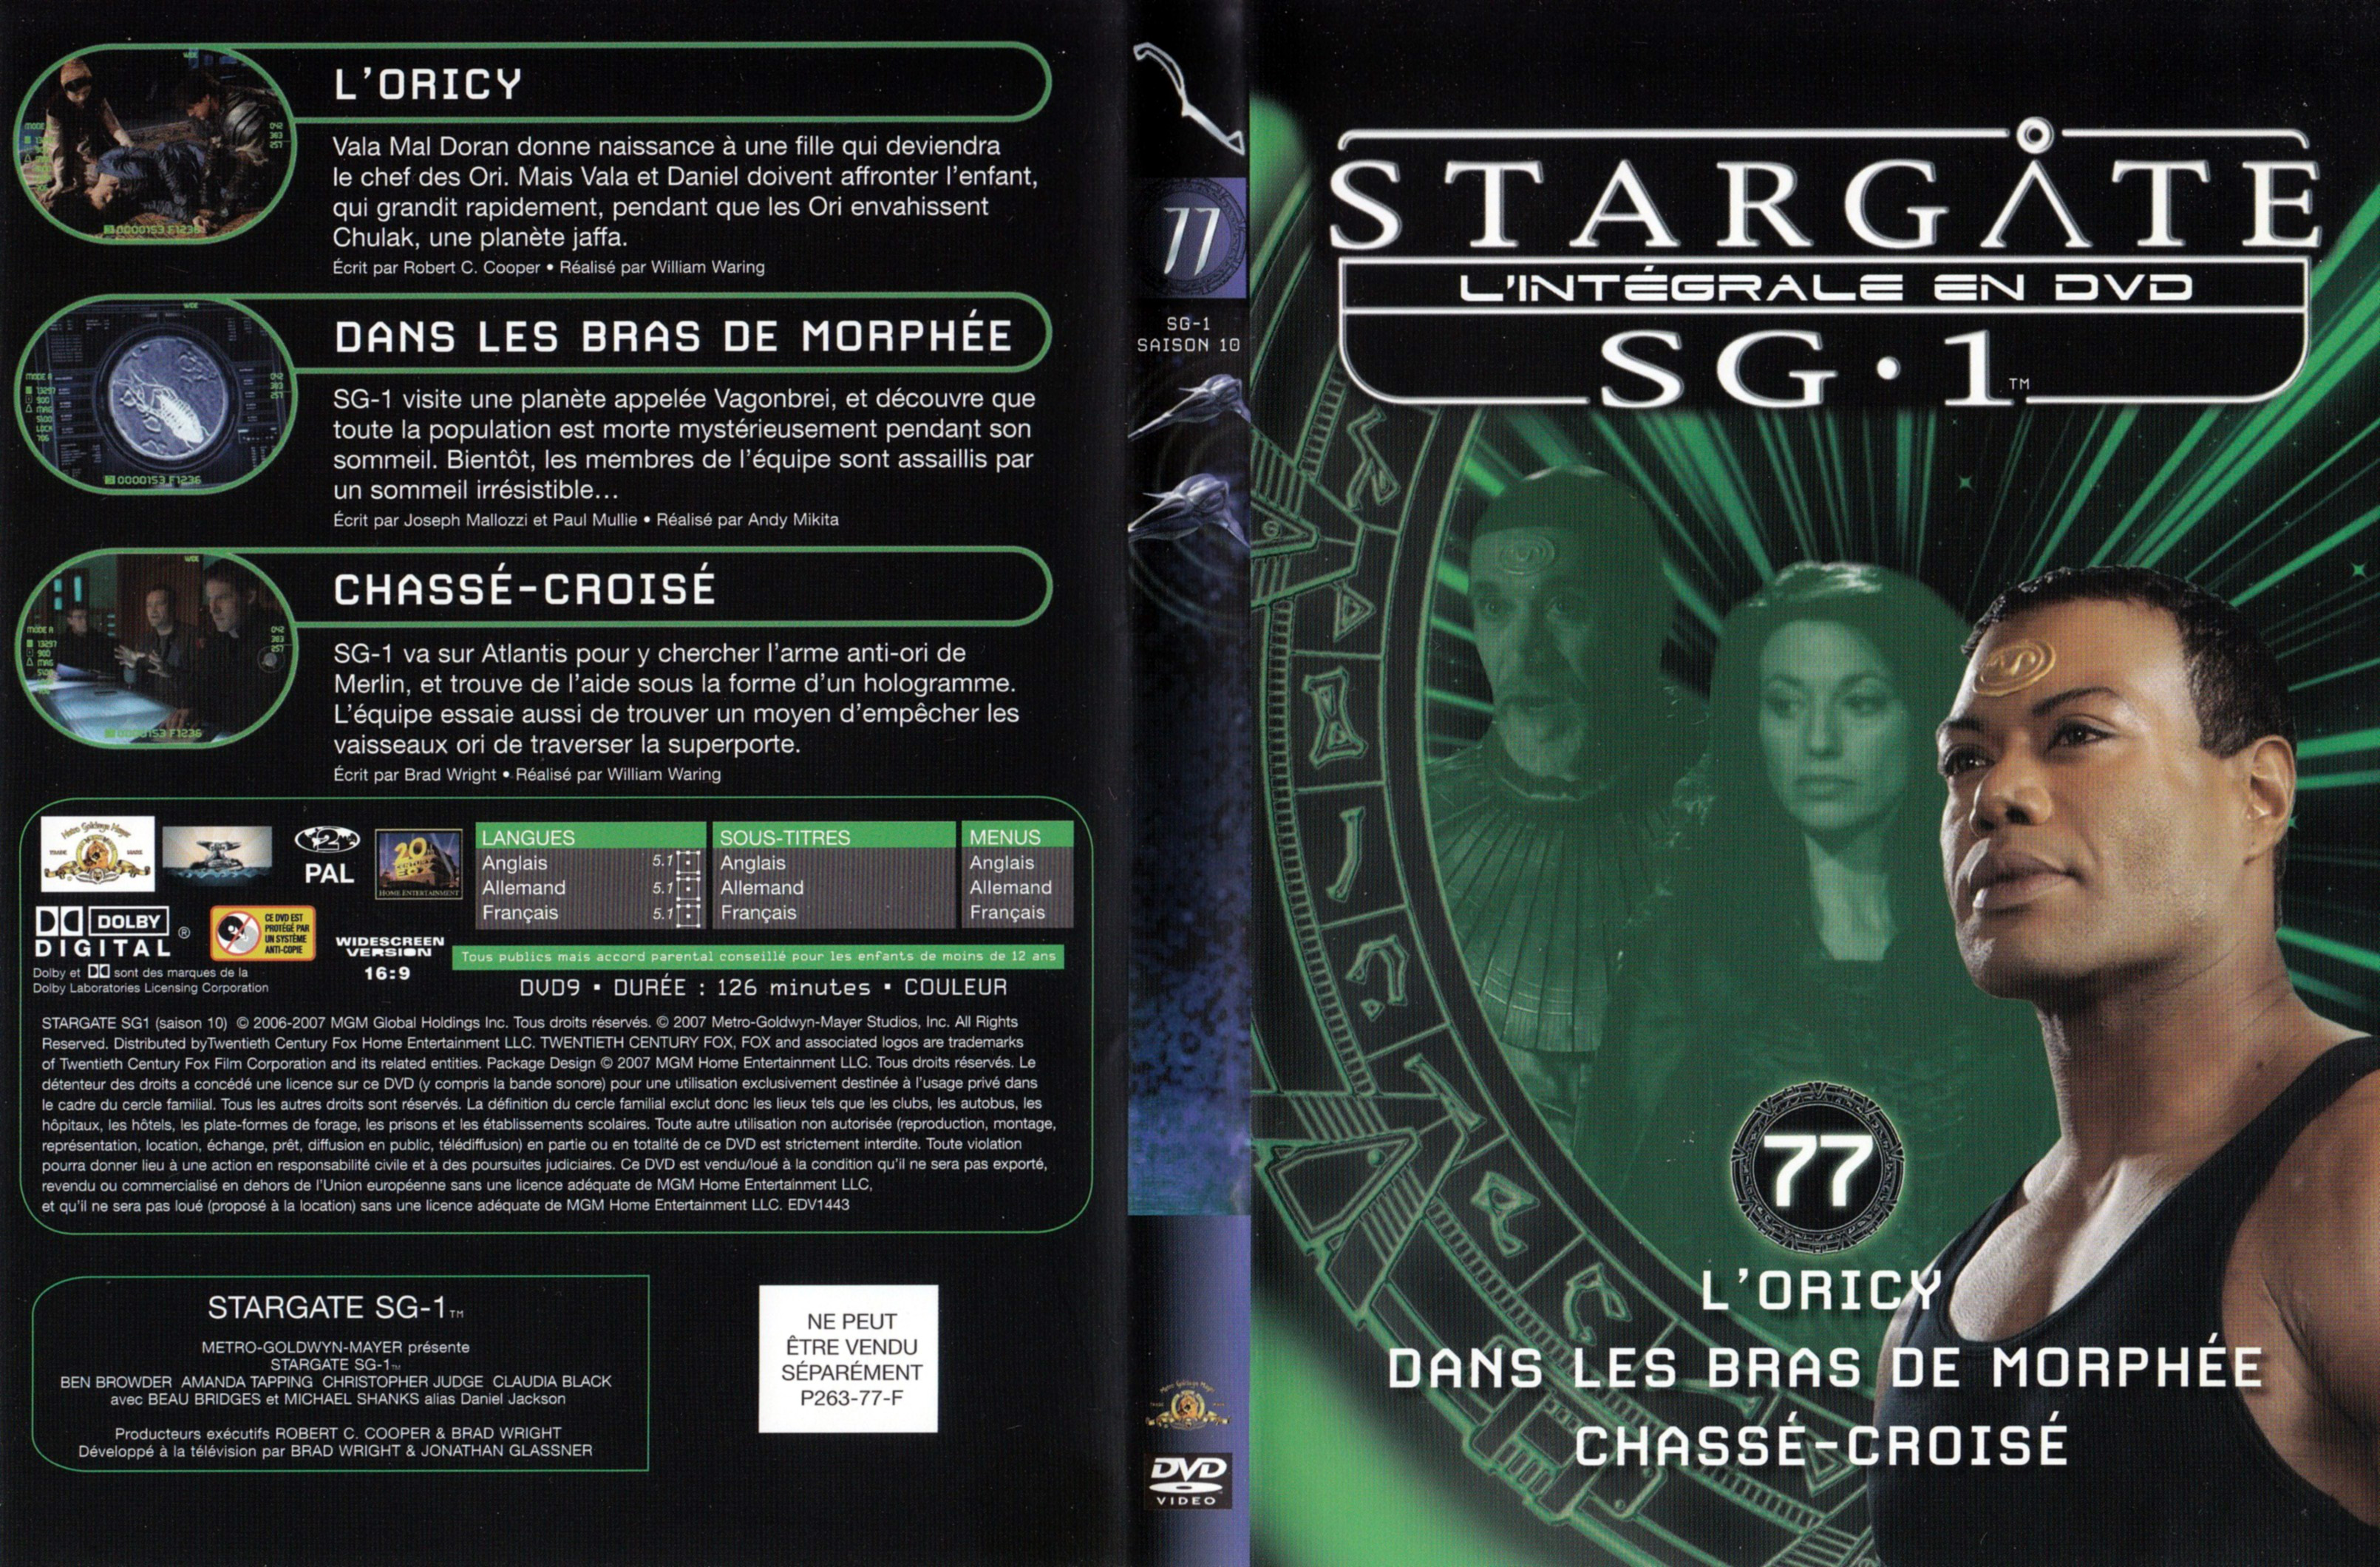 Jaquette DVD Stargate SG1 Intgrale Saison 10 vol 77